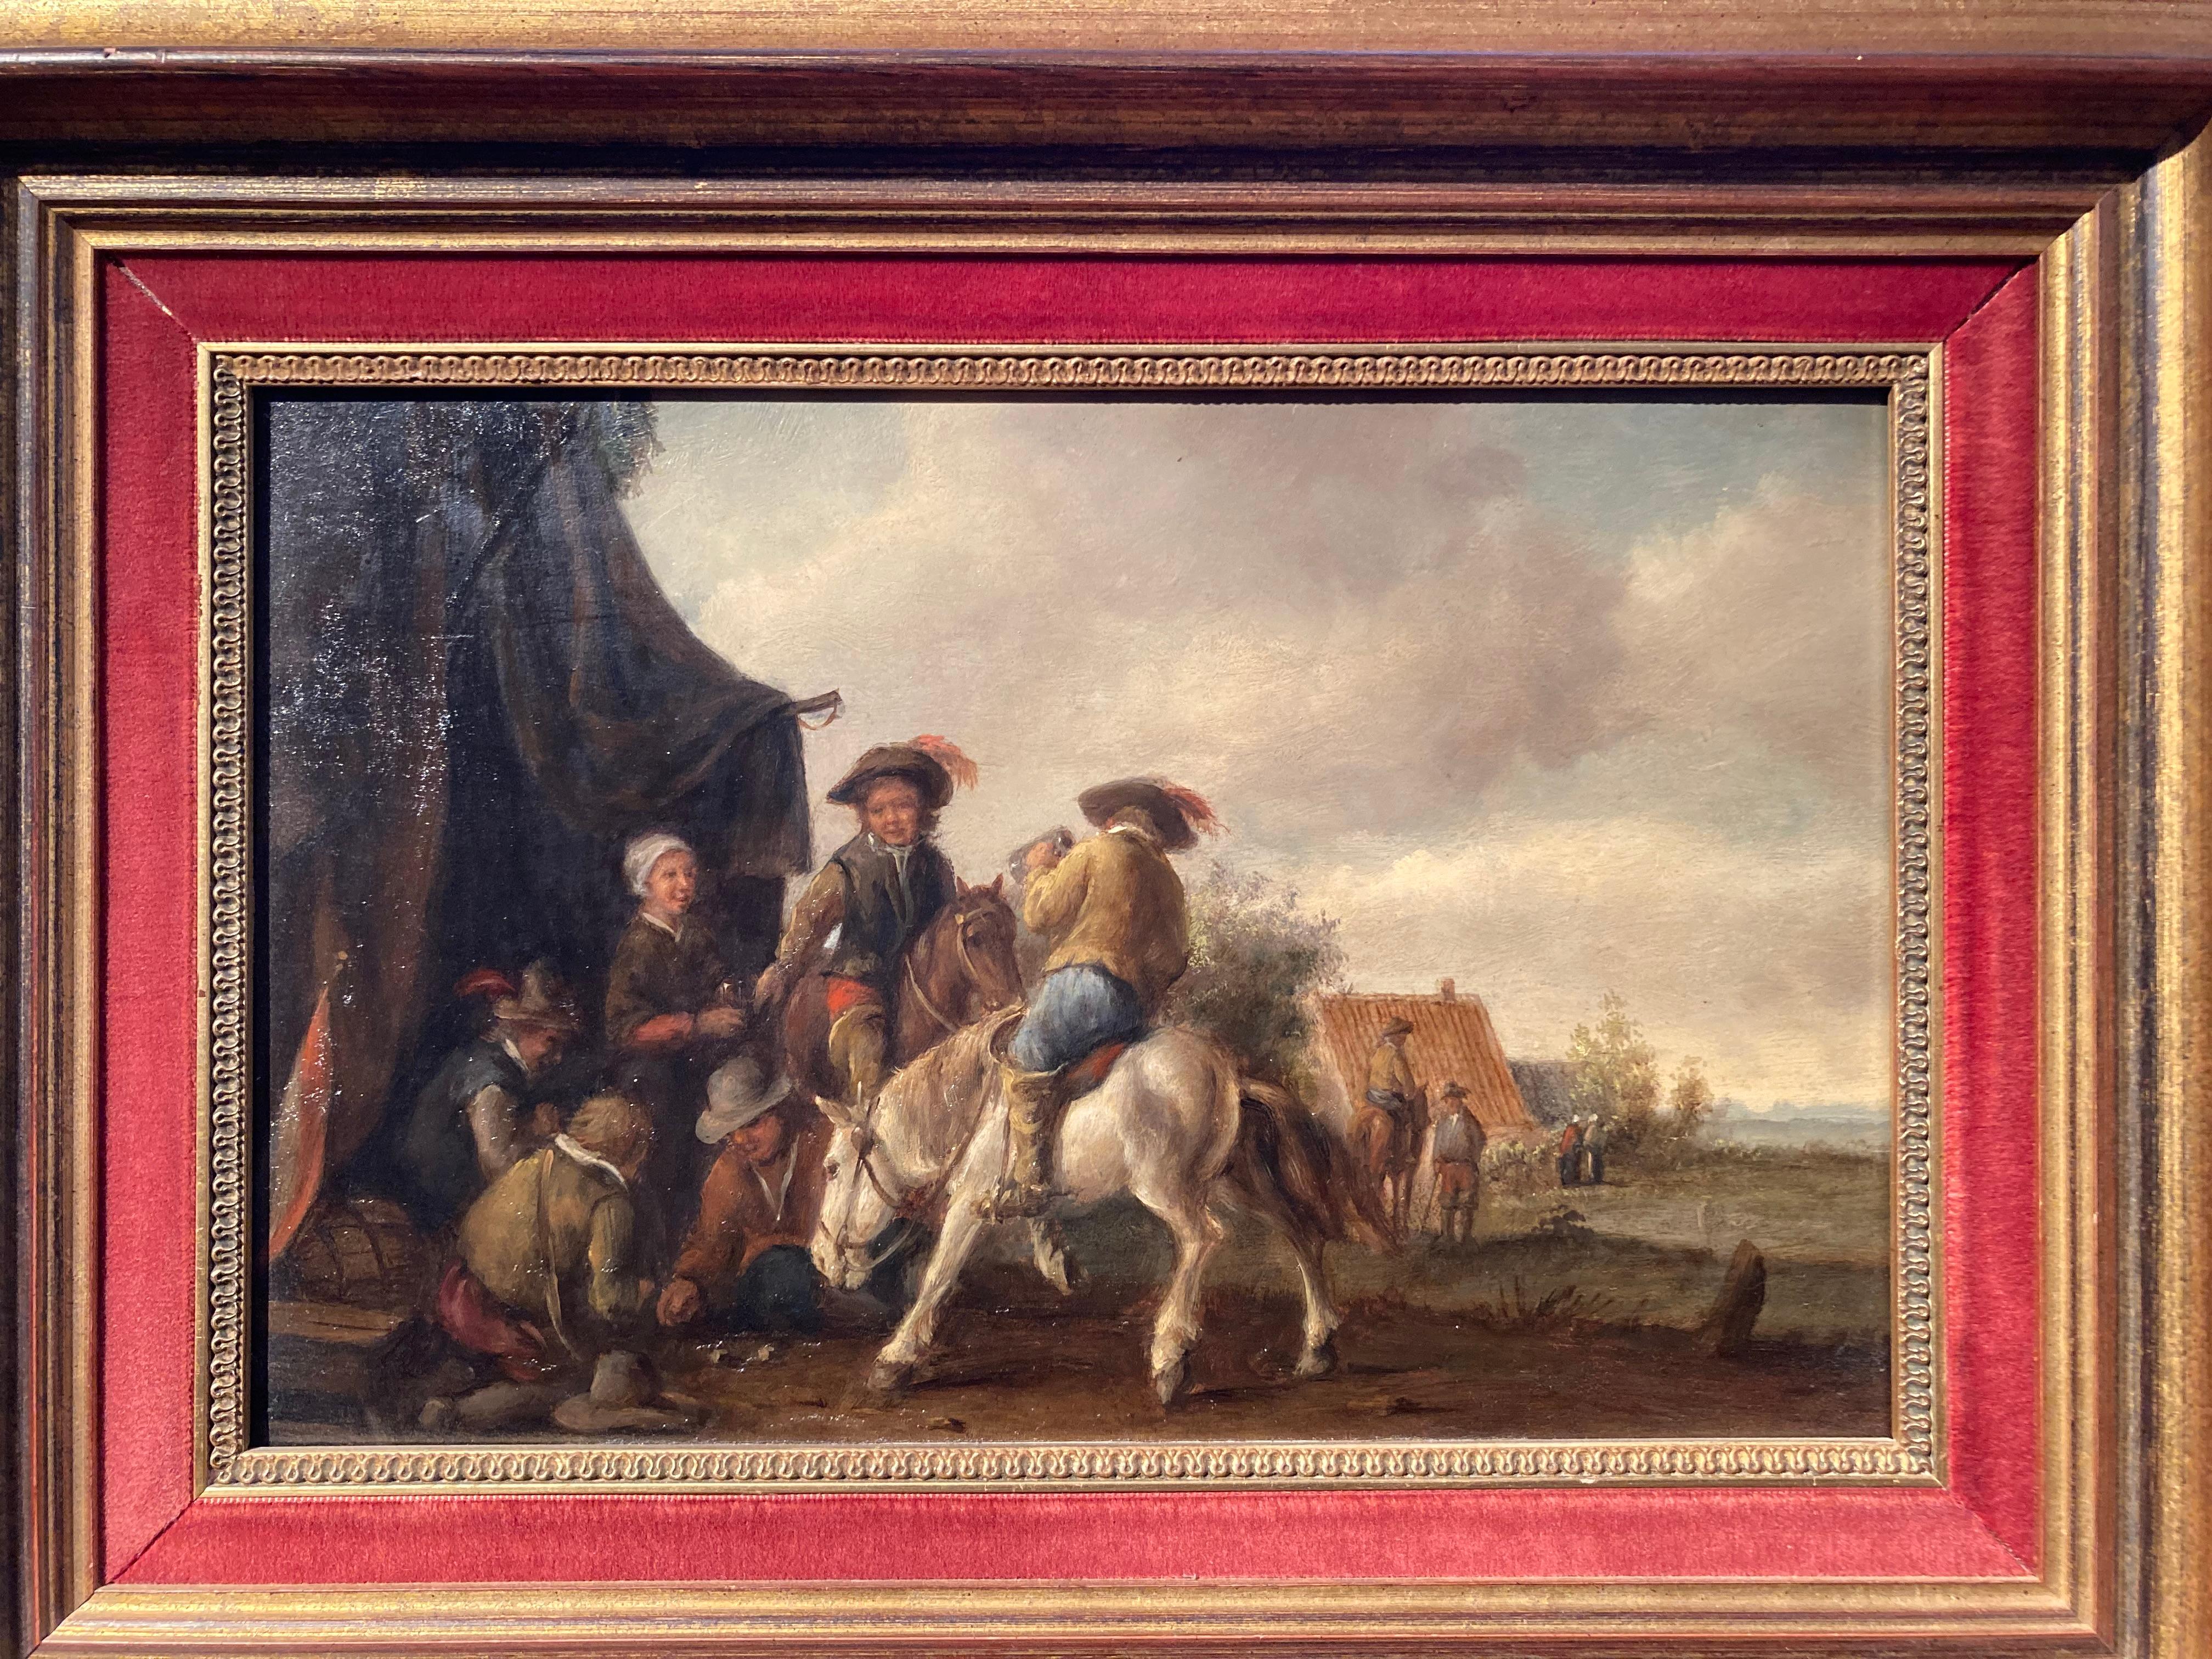 Kreis Wouwerman, Reiter von einem Zelt, Reiter mit Karten, niederländischer alter Meister (Braun), Figurative Painting, von Philips Wouwerman